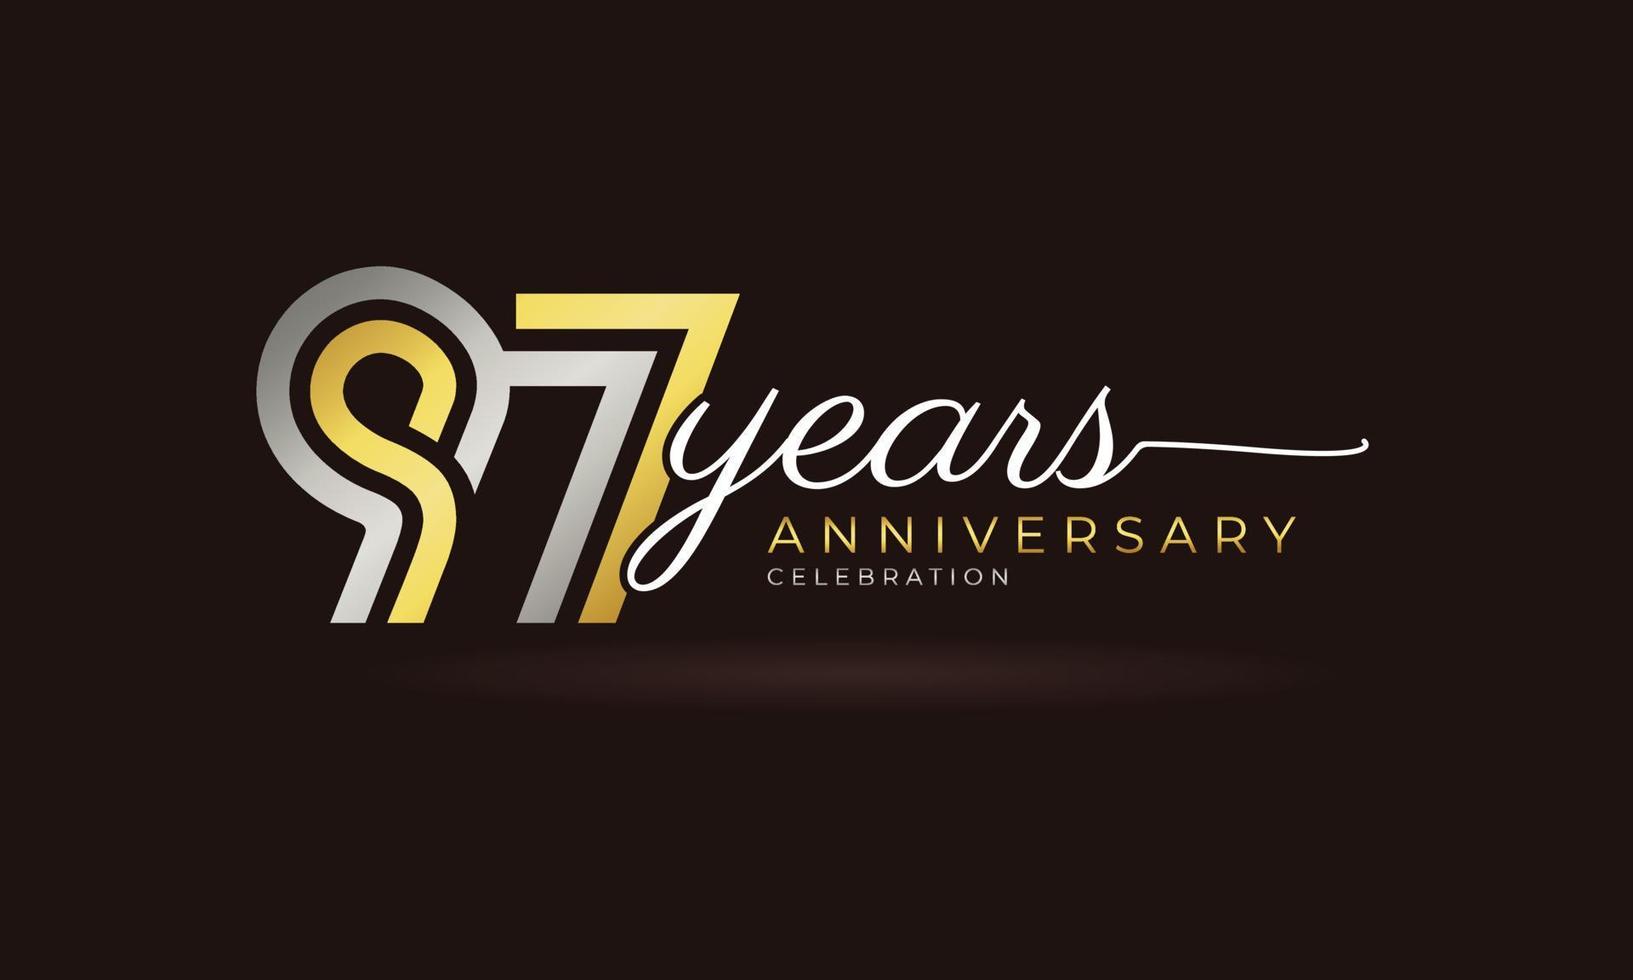 Logotype de célébration du 97e anniversaire avec plusieurs lignes liées couleur argent et or pour l'événement de célébration, le mariage, la carte de voeux et l'invitation isolés sur fond sombre vecteur